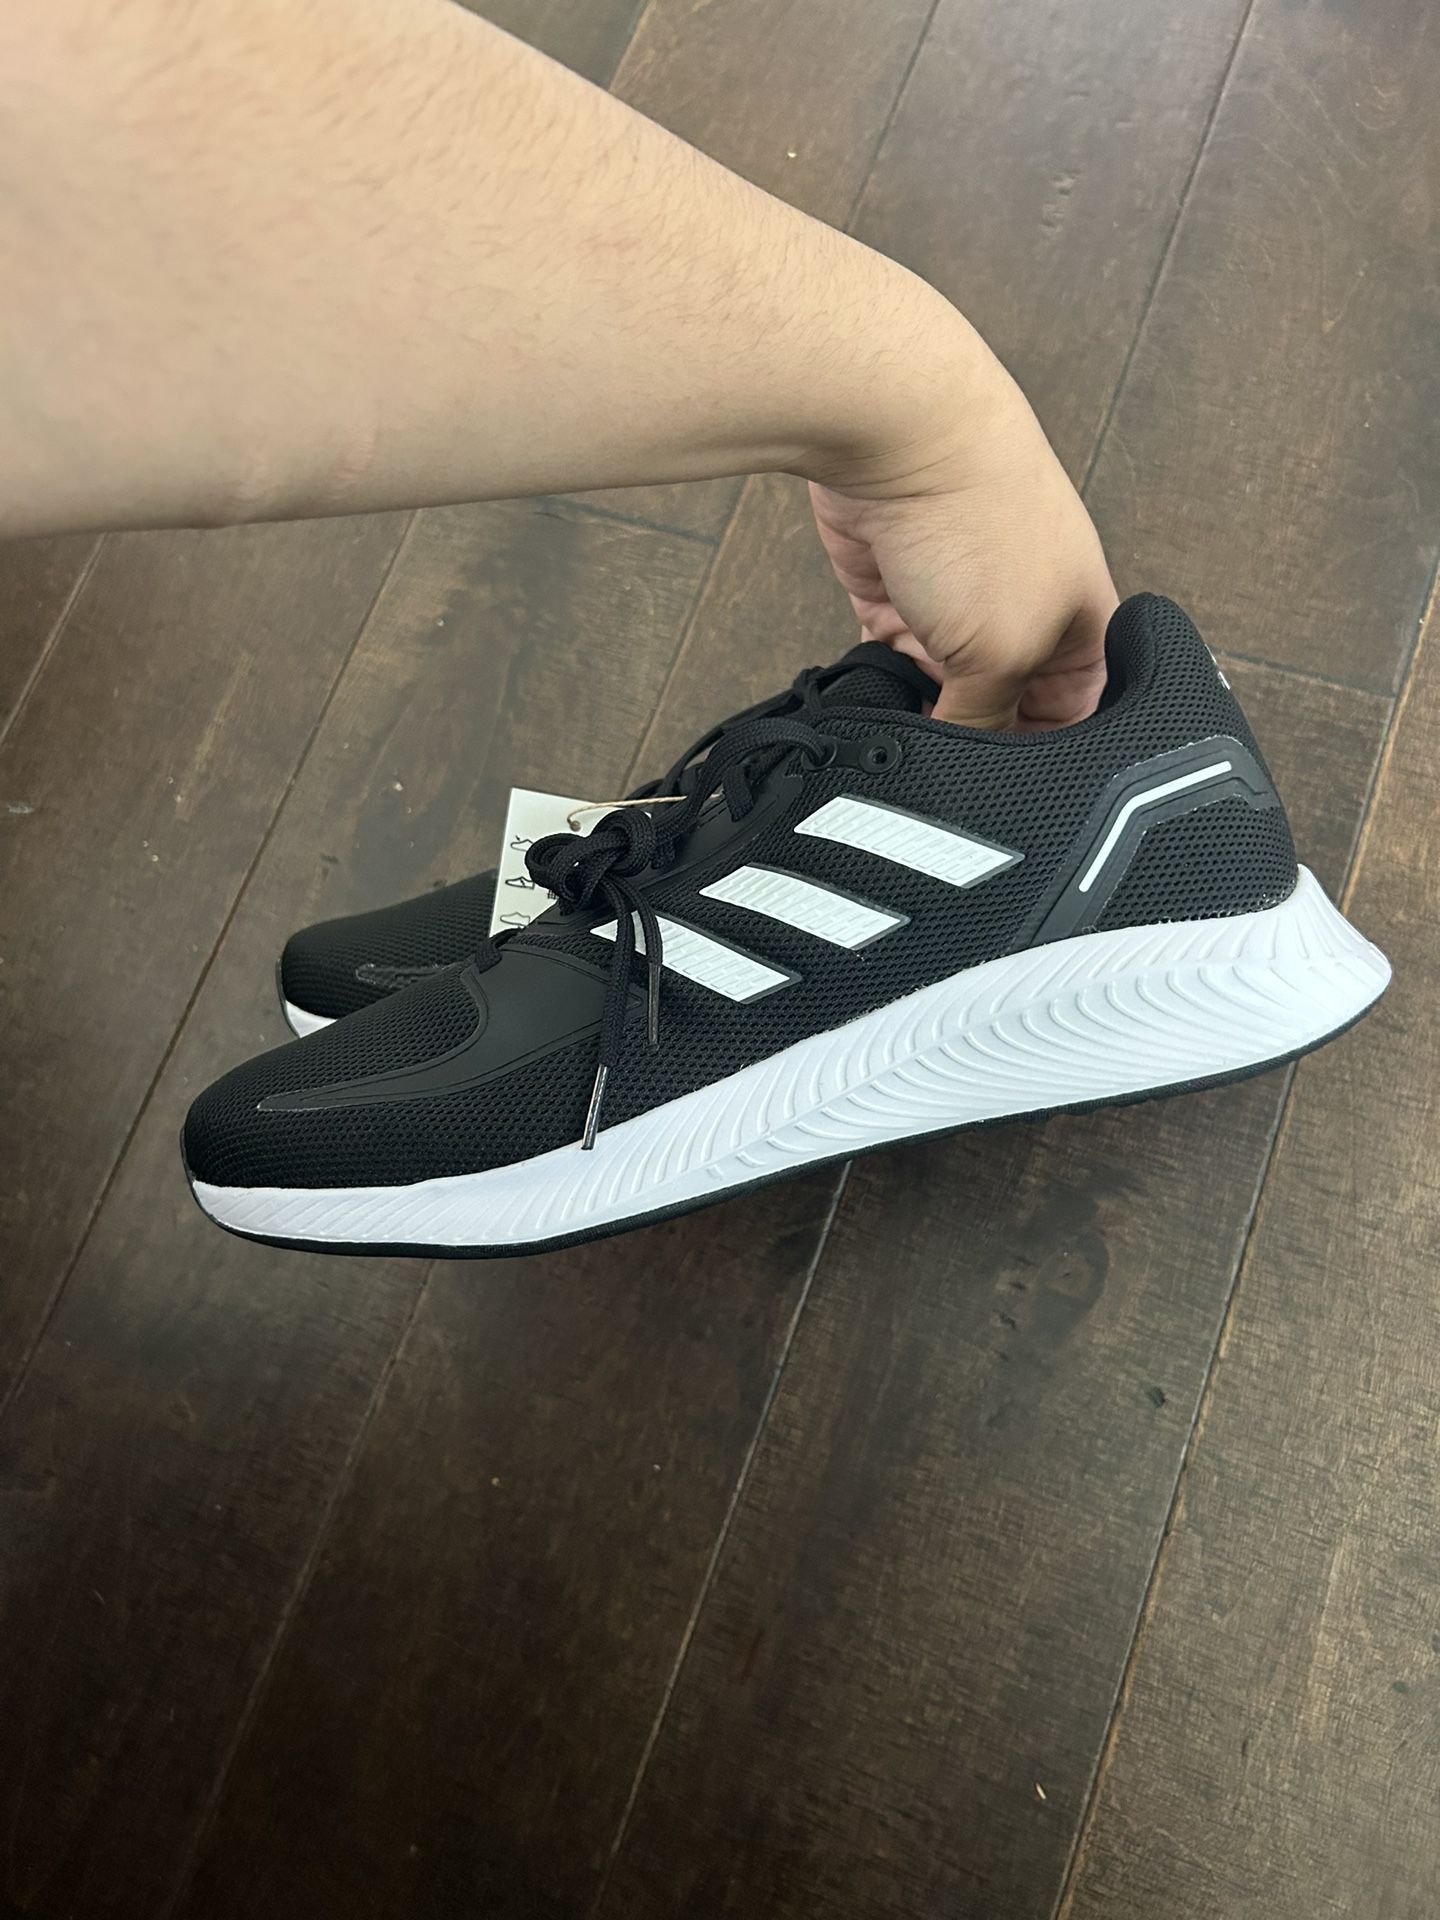 Adidas Run Falcon 2.0 shoes